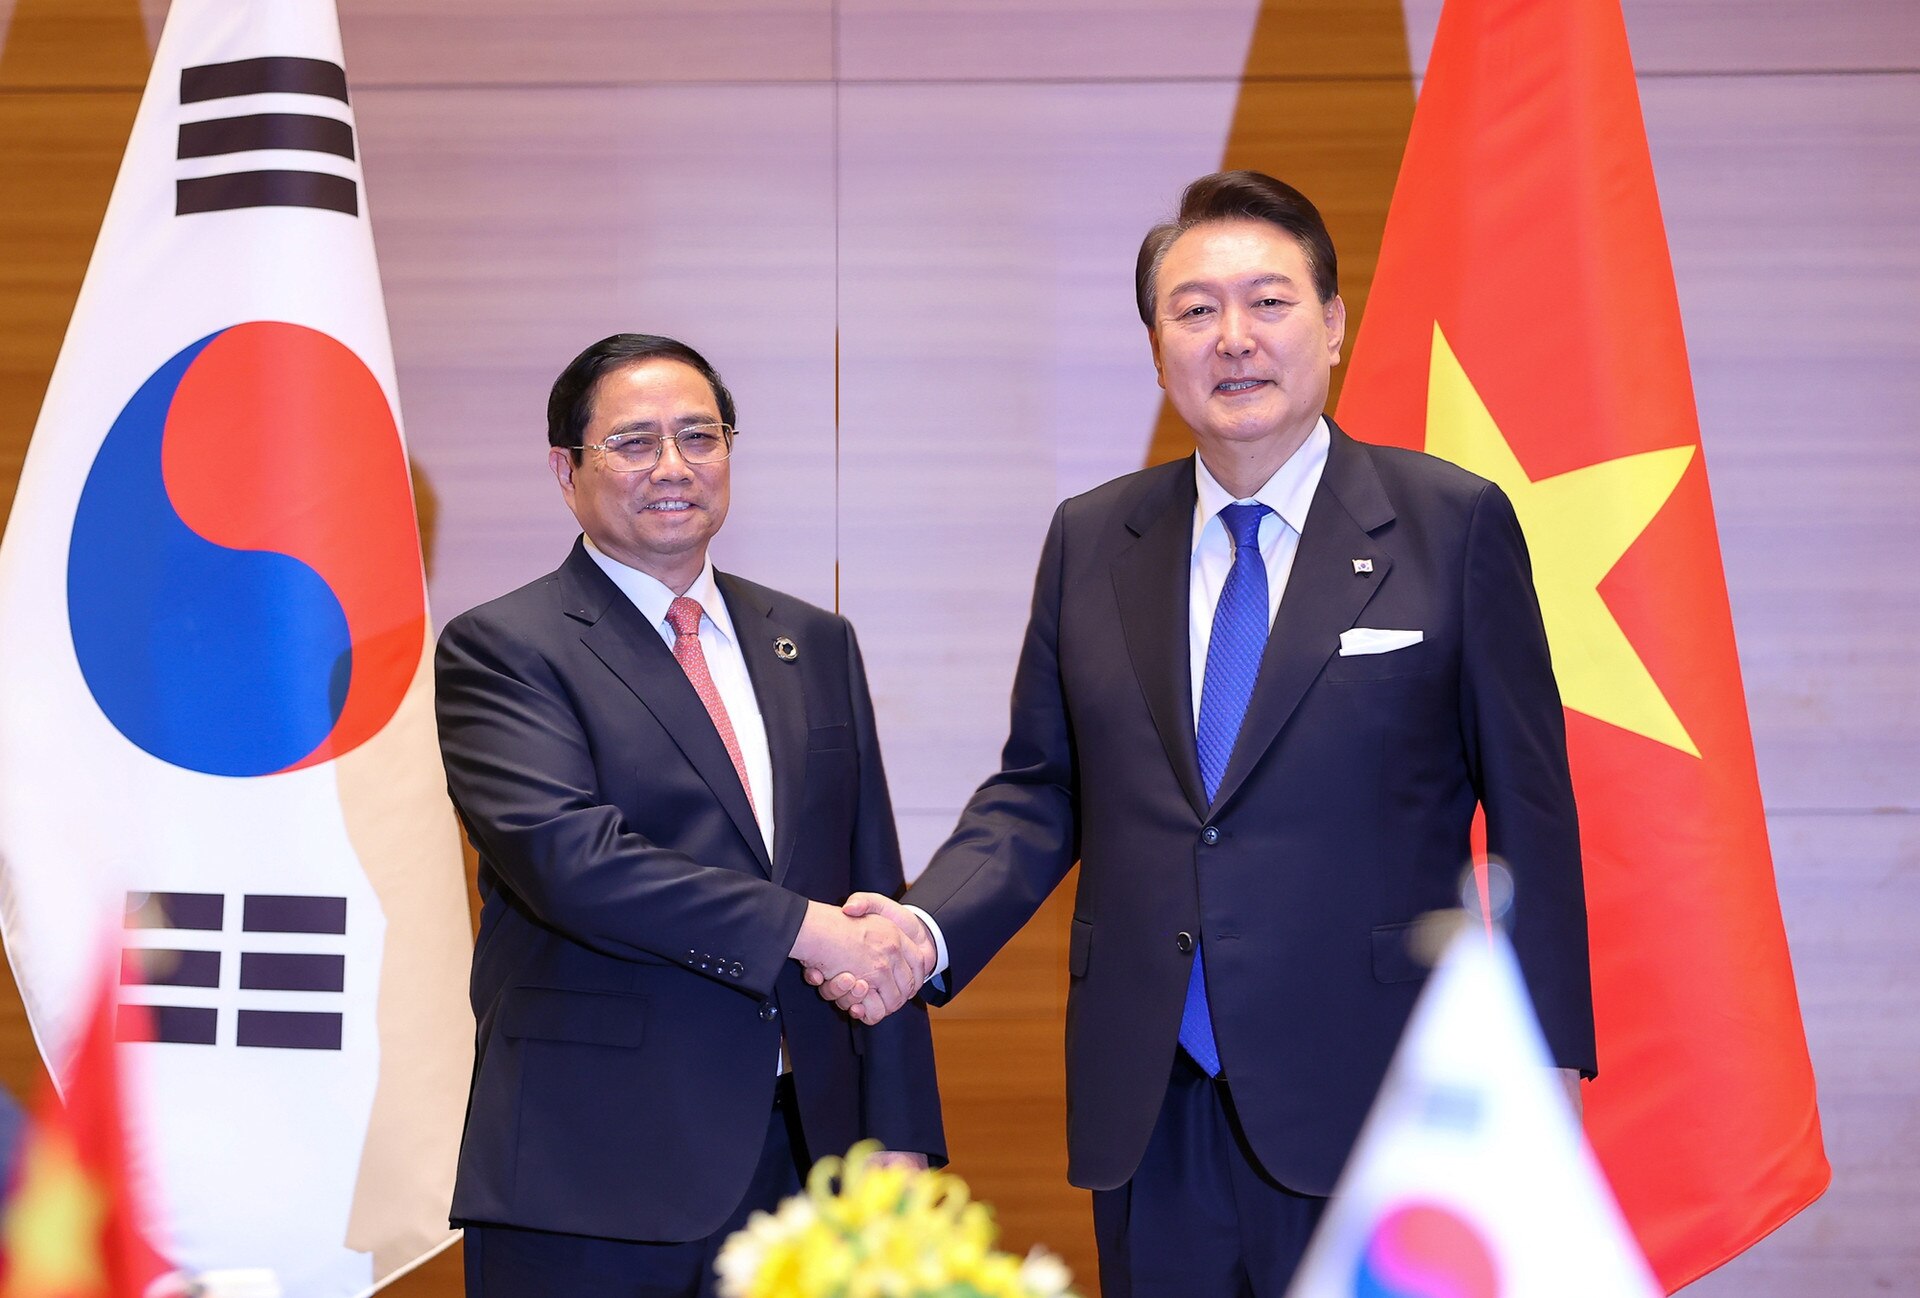 Le Premier ministre Pham Minh Chinh rencontre le président de la République de Corée à l'occasion du sommet élargi du G7 - Photo 1.